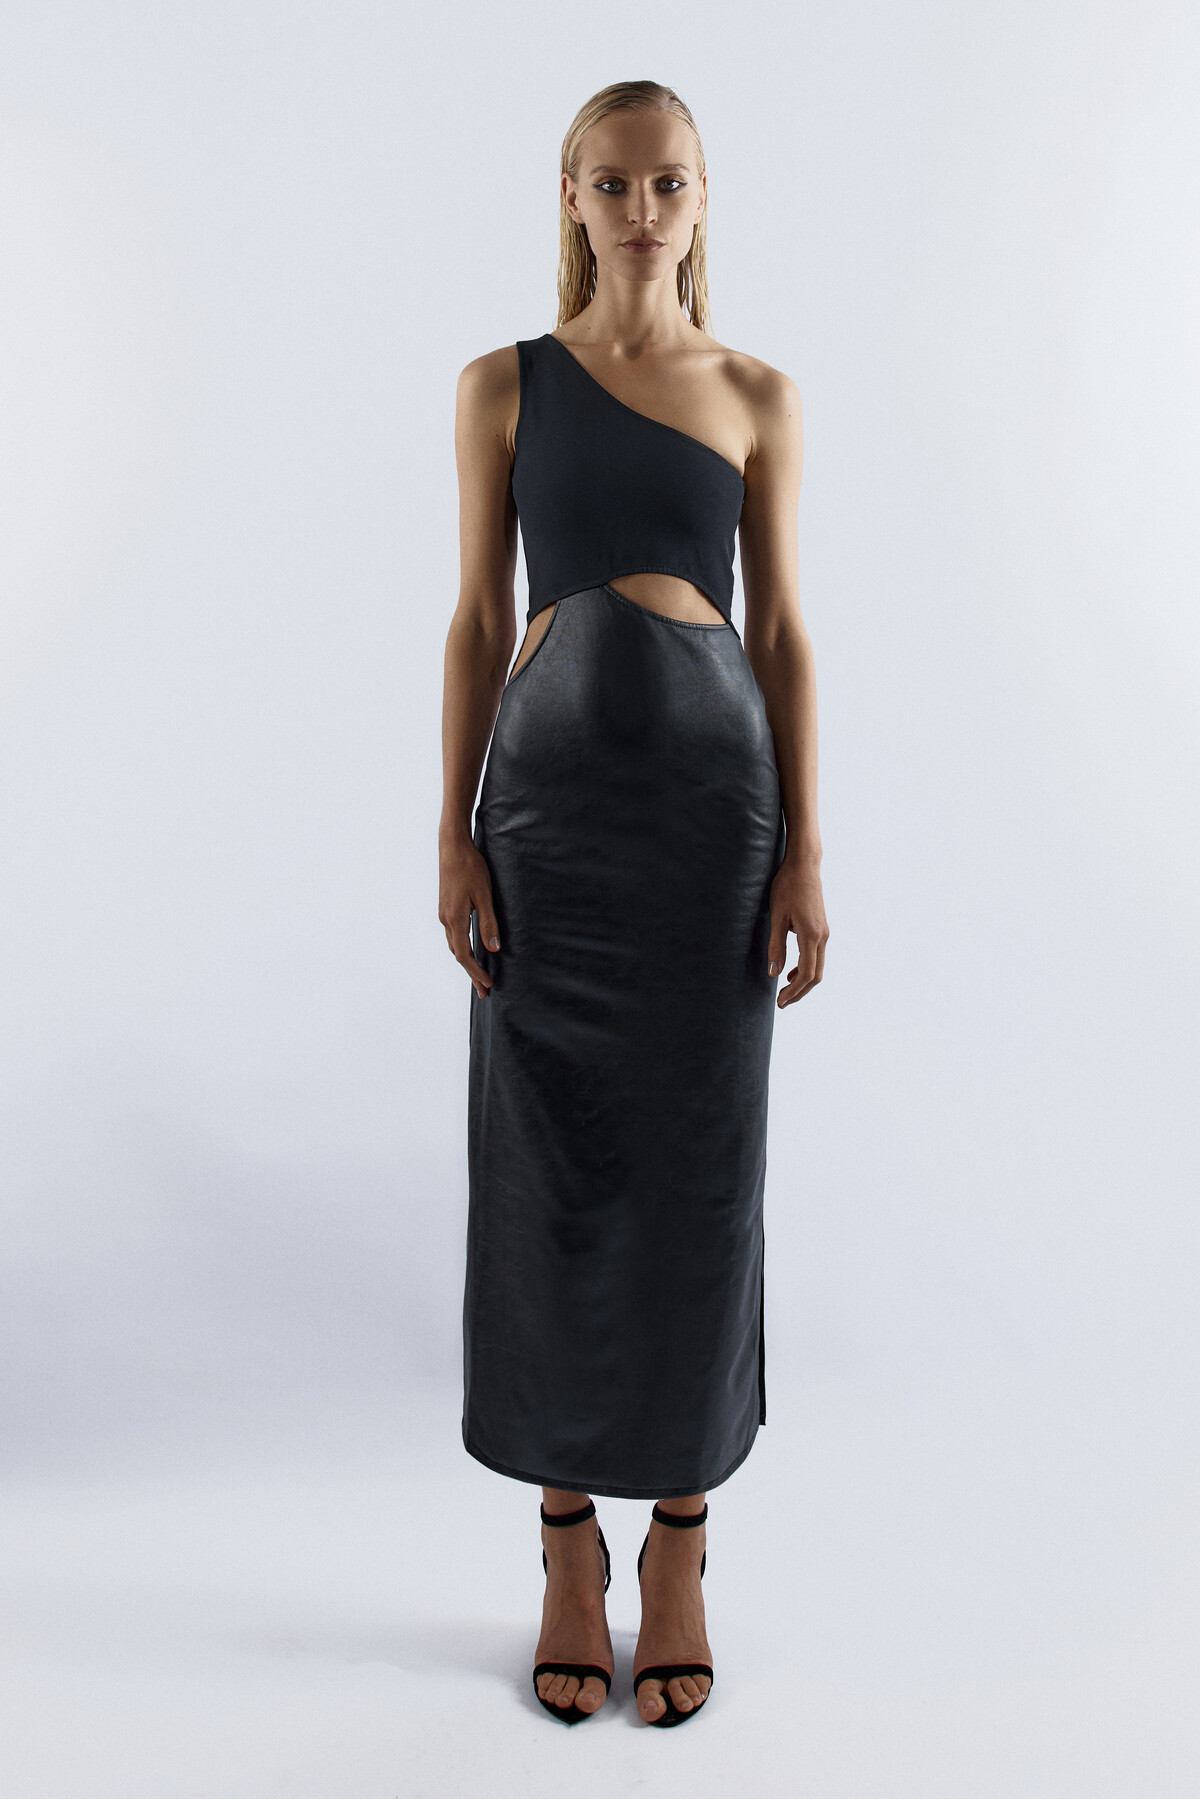 BELLA One Shoulder Maxi Black Dress